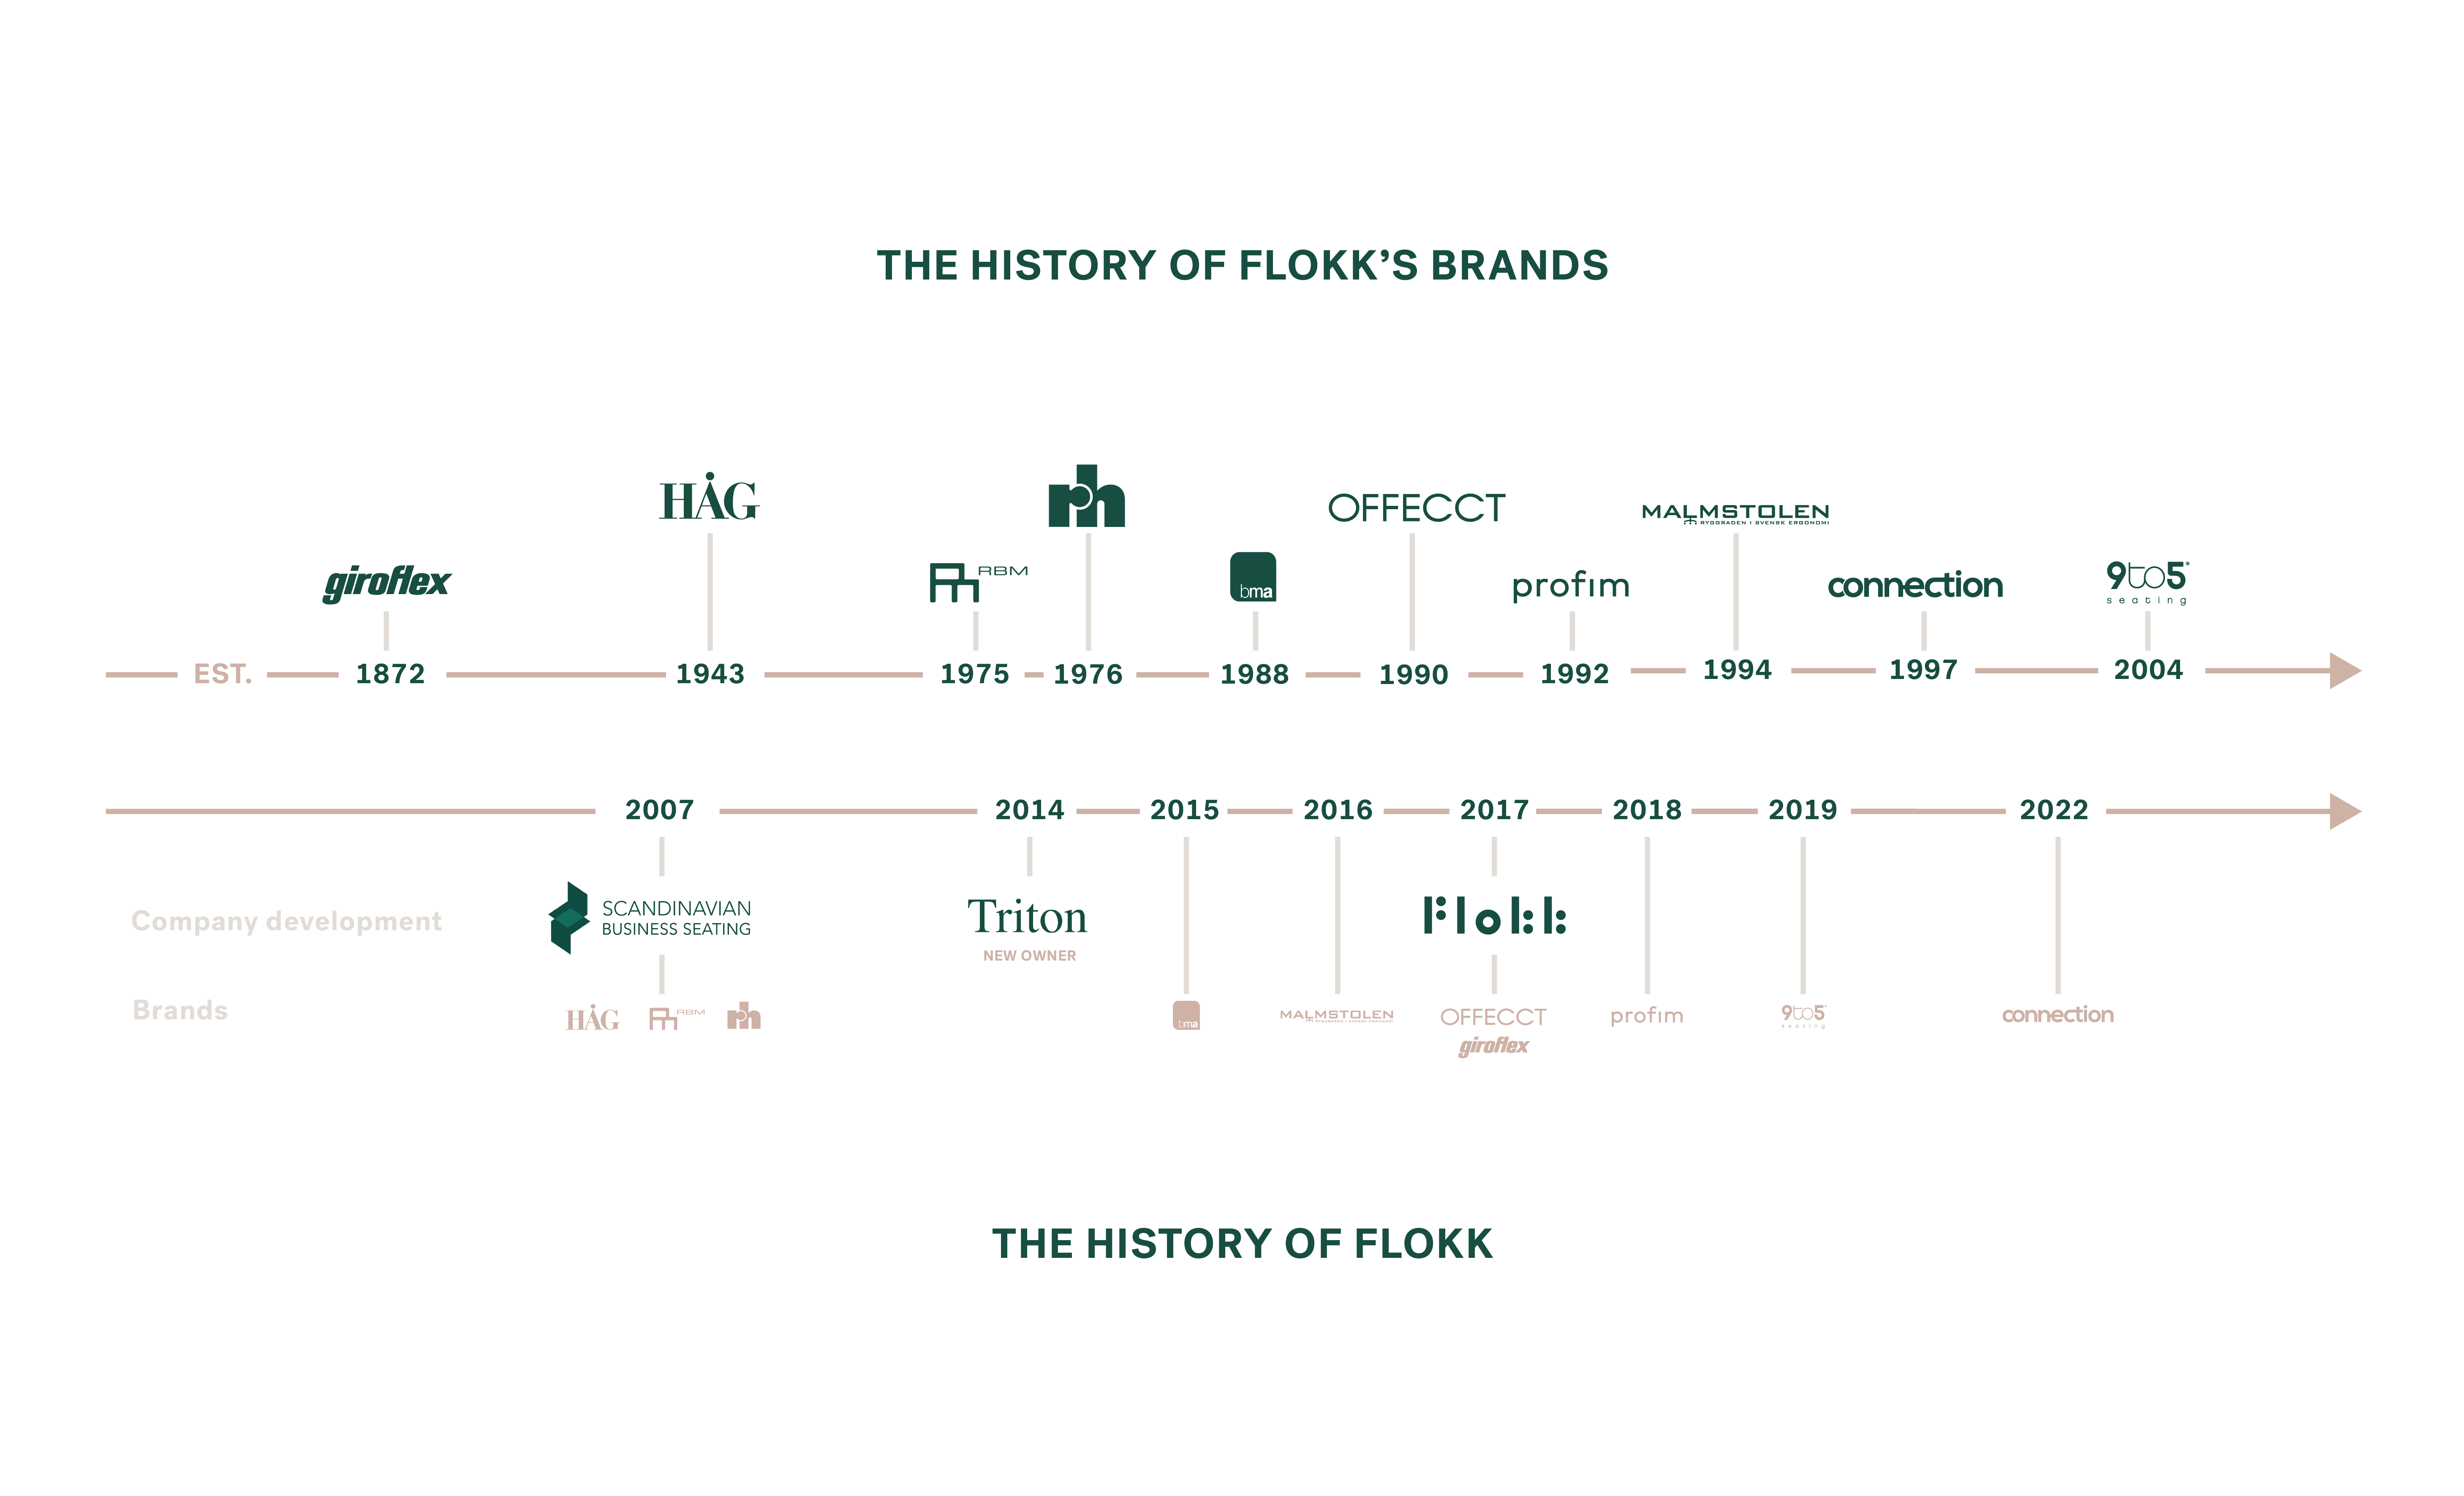 History of Flokks brands